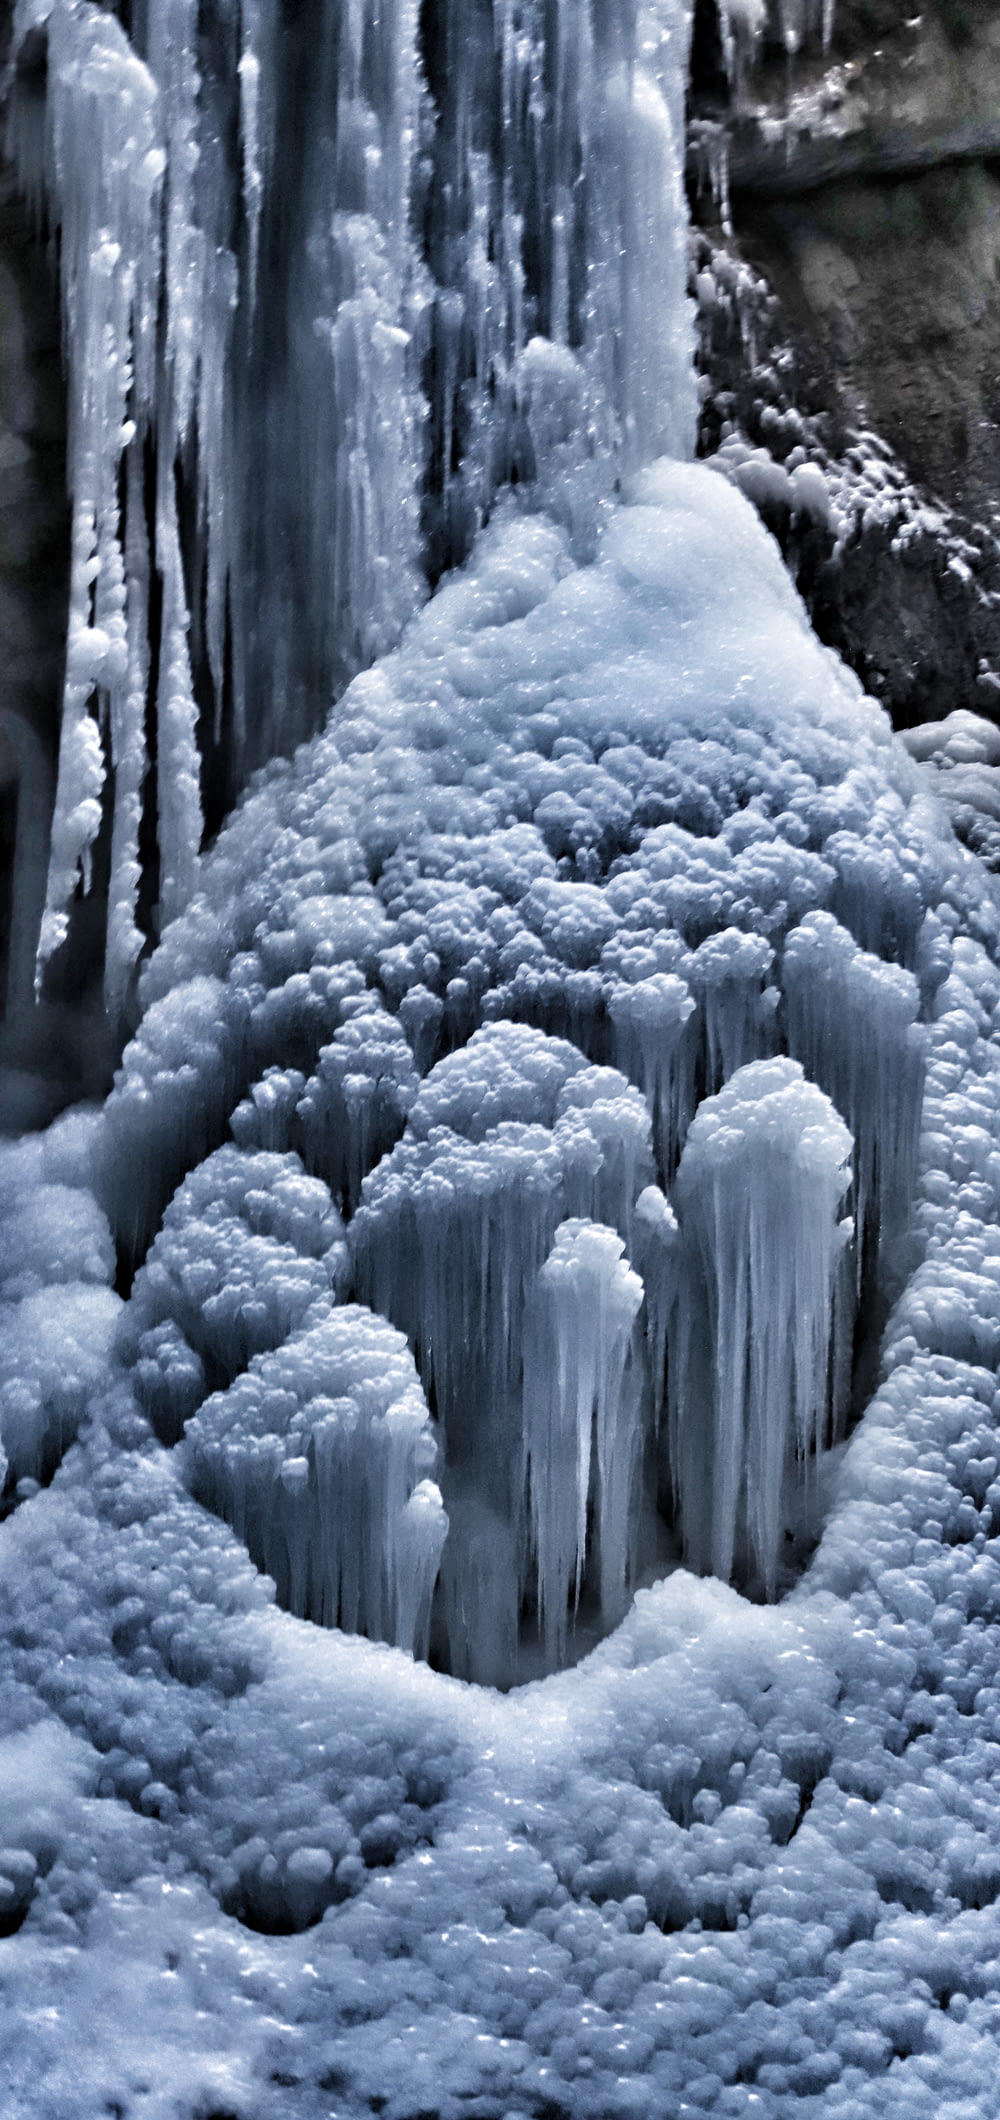 Eine Gruppe von Eiszapfen, die sich neben einem Wasserfall befinden